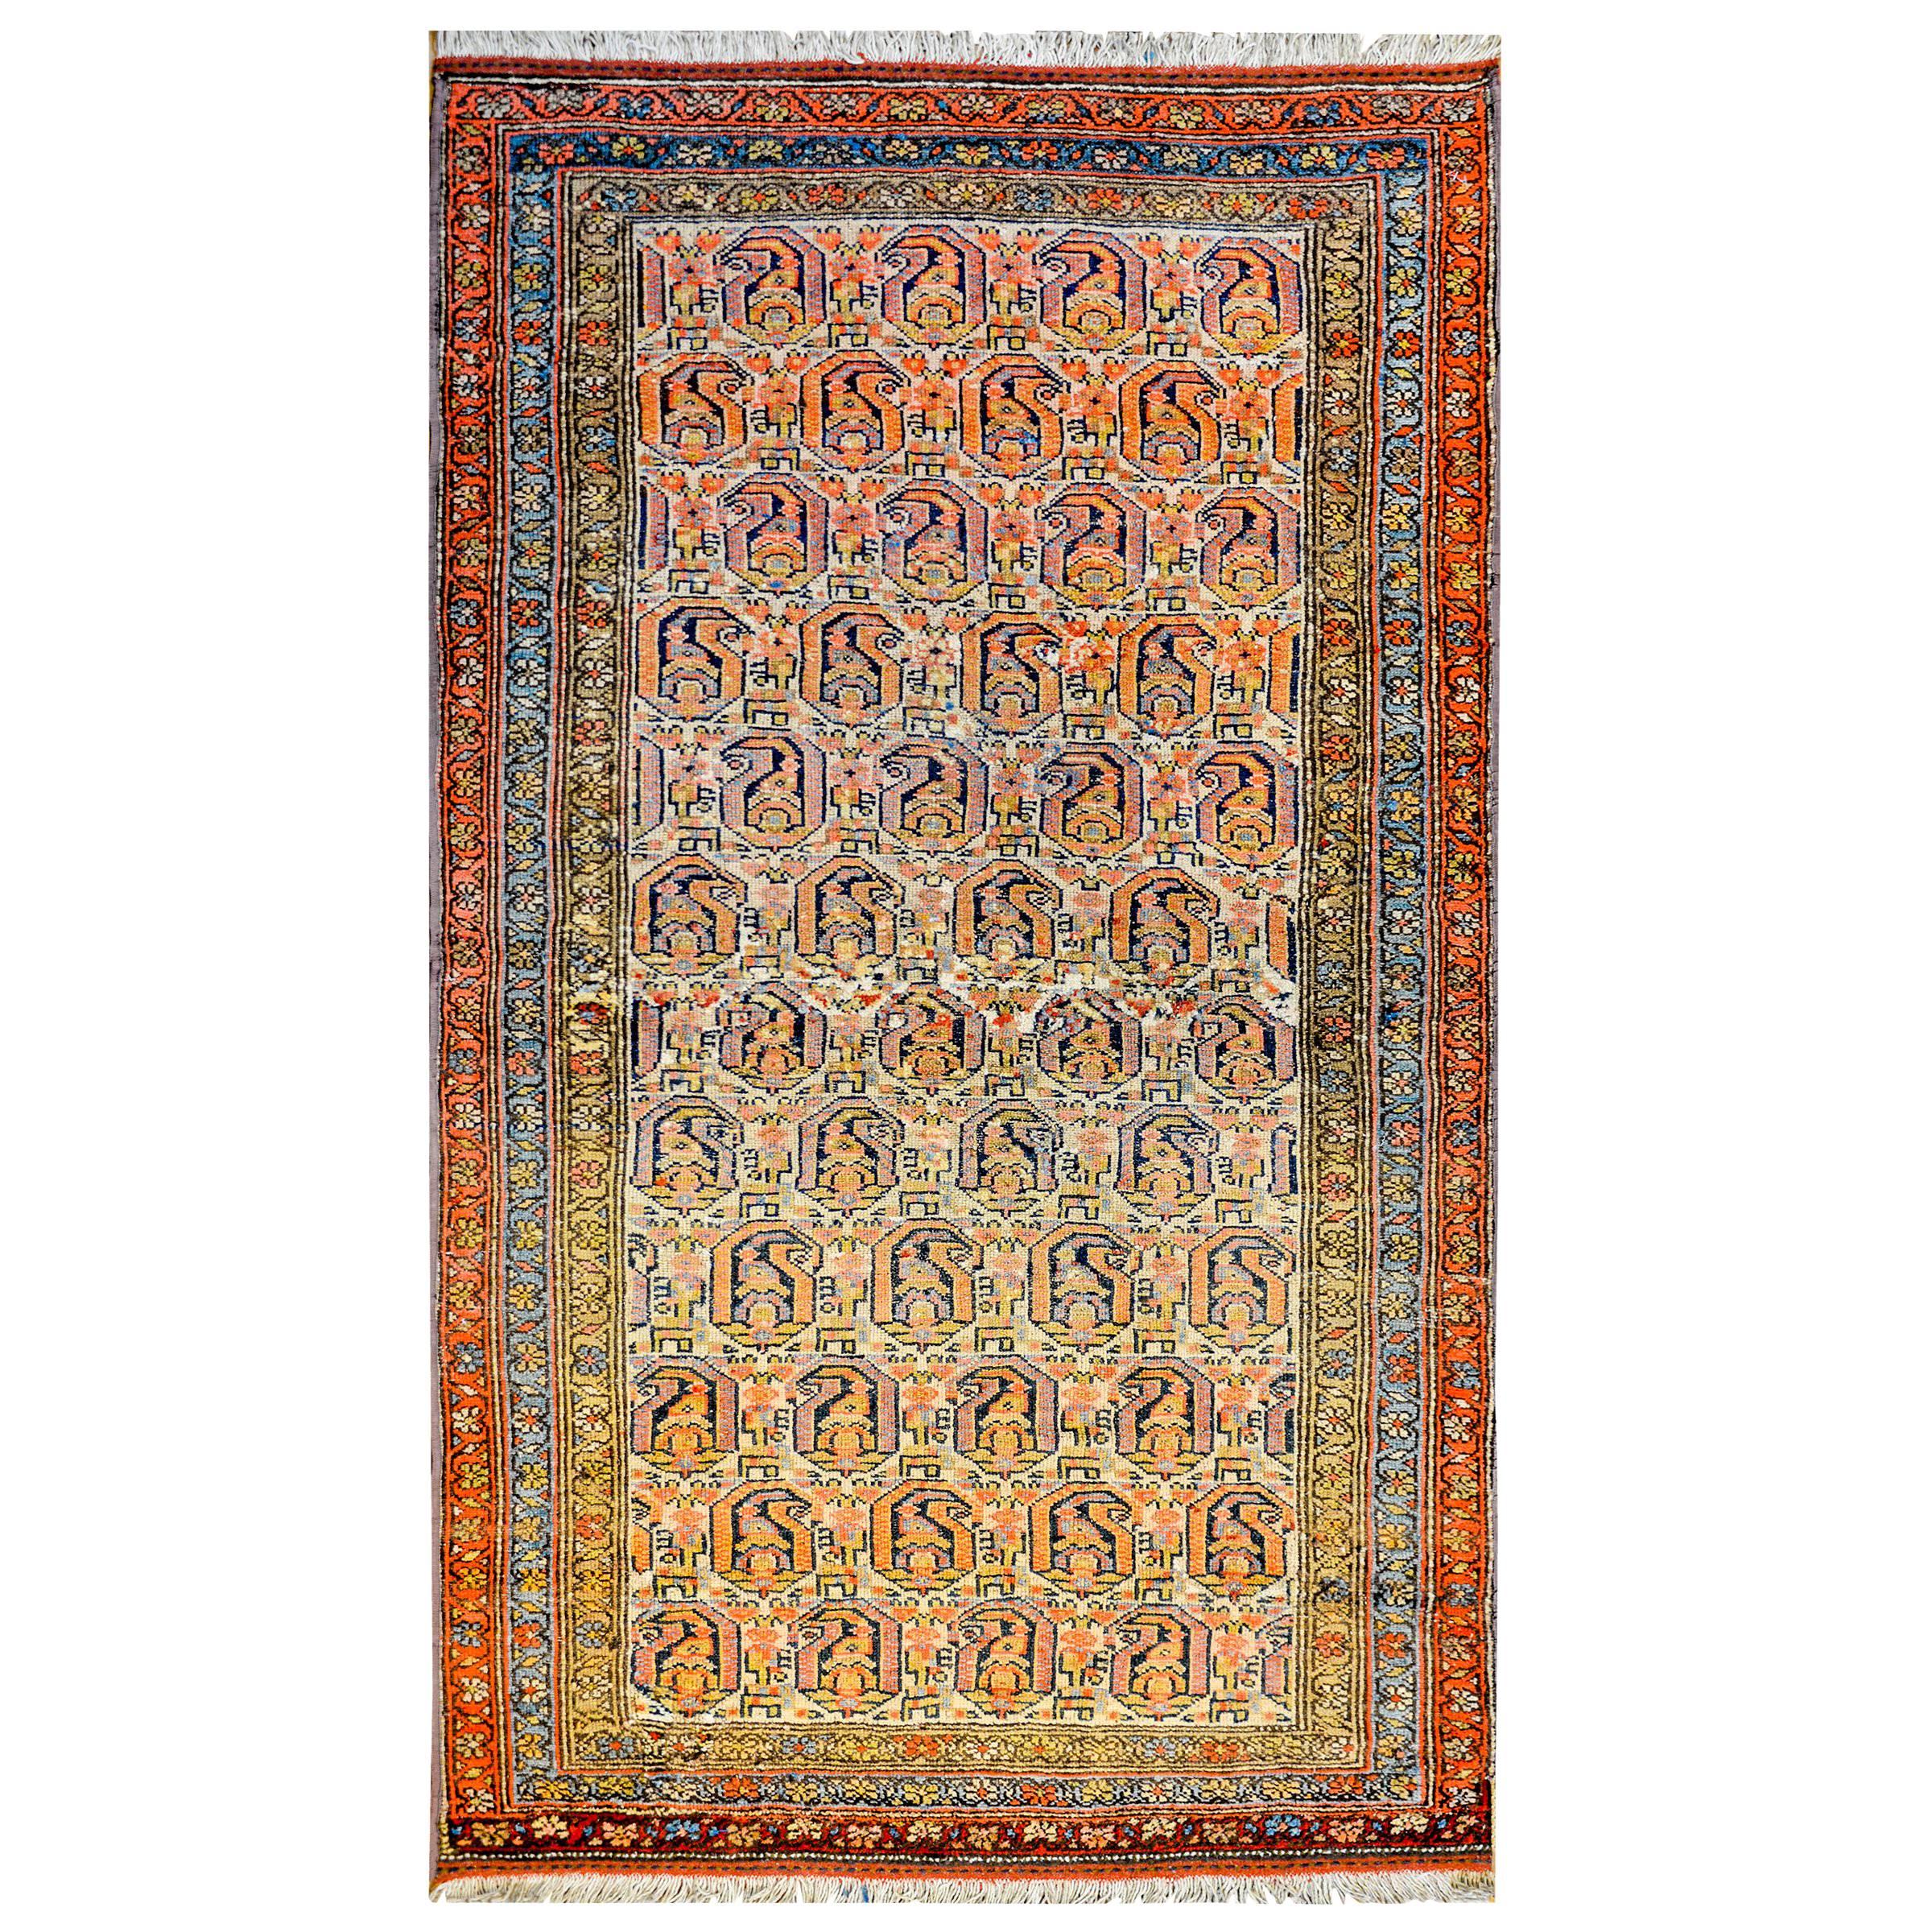 Wunderschöner Bibikibad-Teppich aus dem frühen 20. Jahrhundert